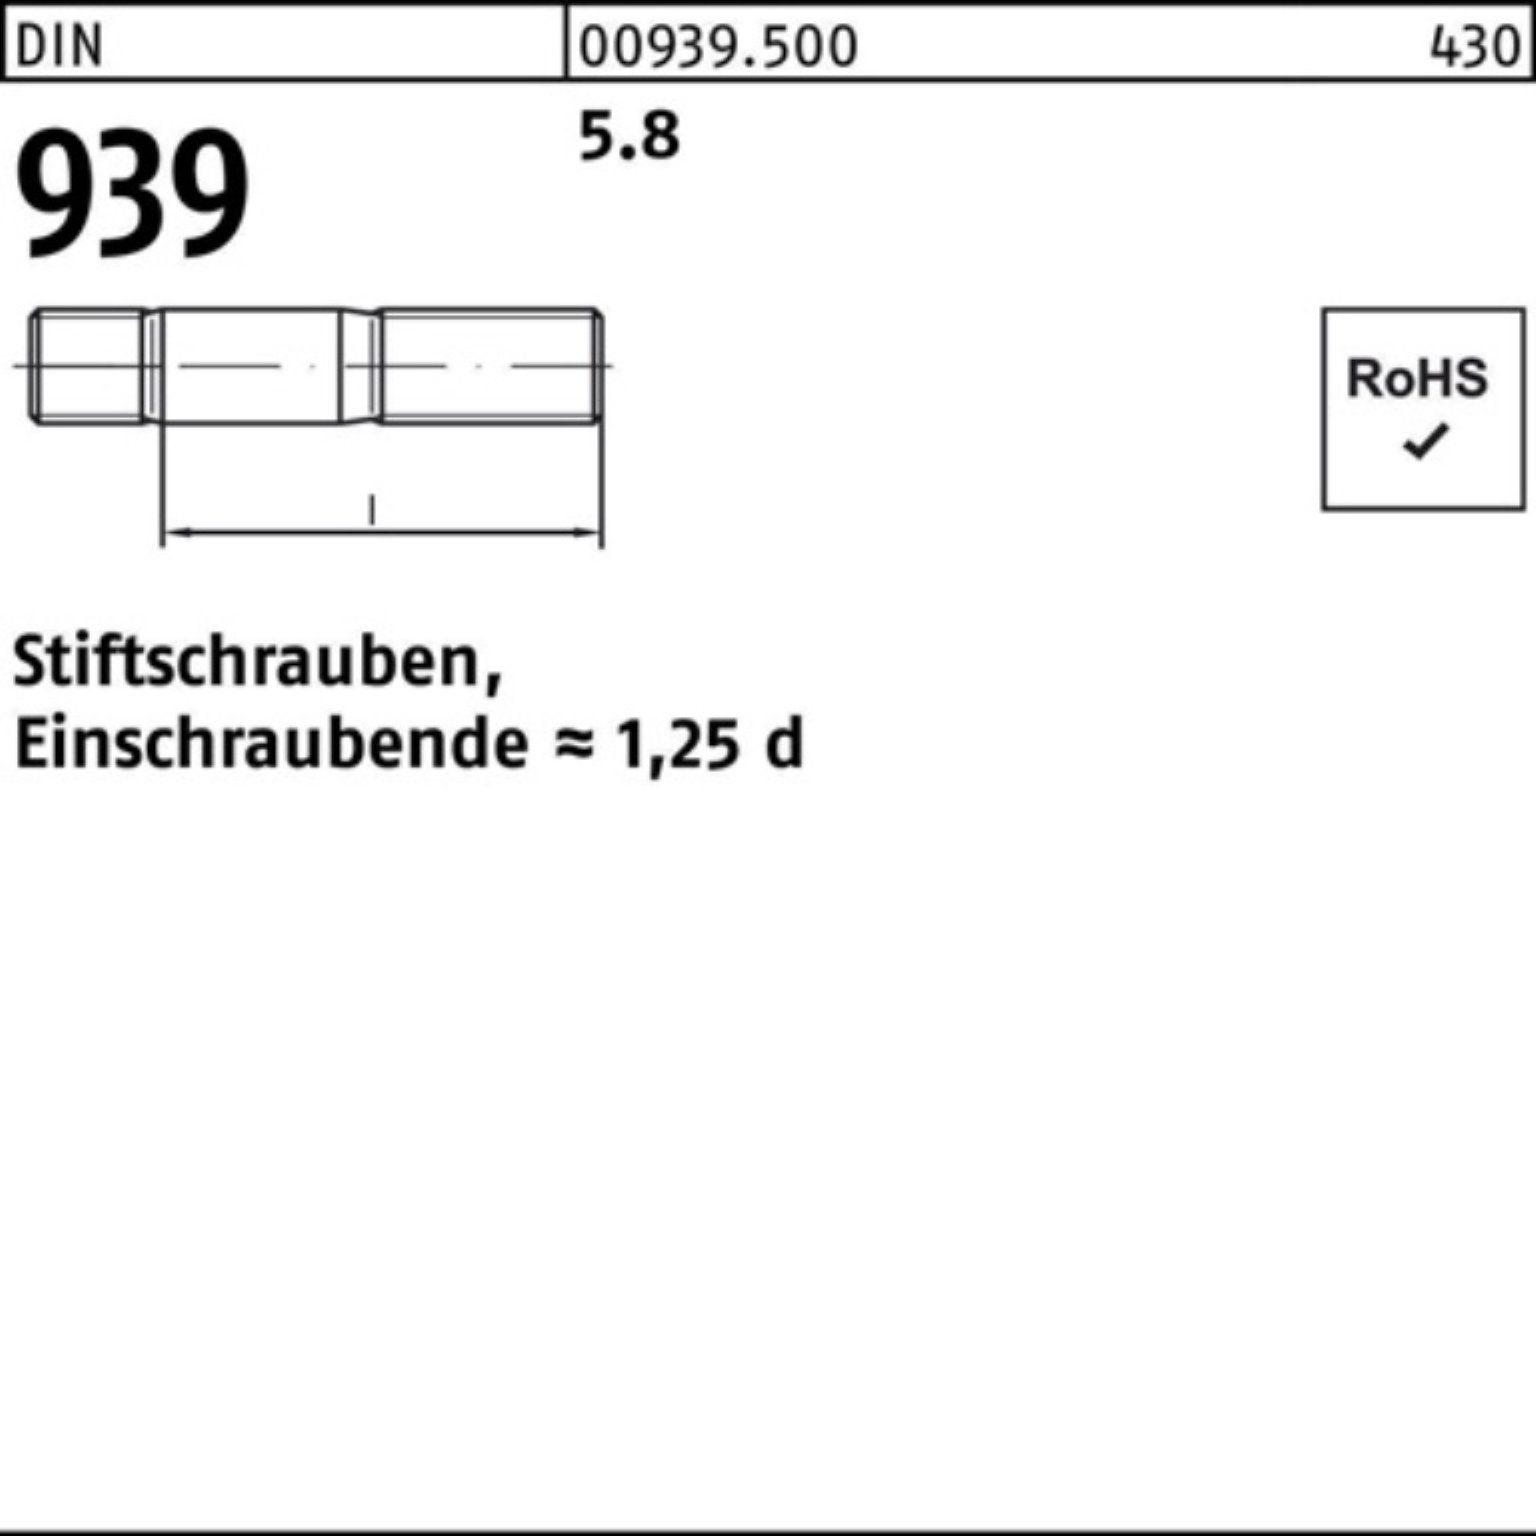 Reyher Stiftschraube 100er Pack Stiftschraube M24x 5.8 DIN 939 10 50 S Einschraubende=1,25d